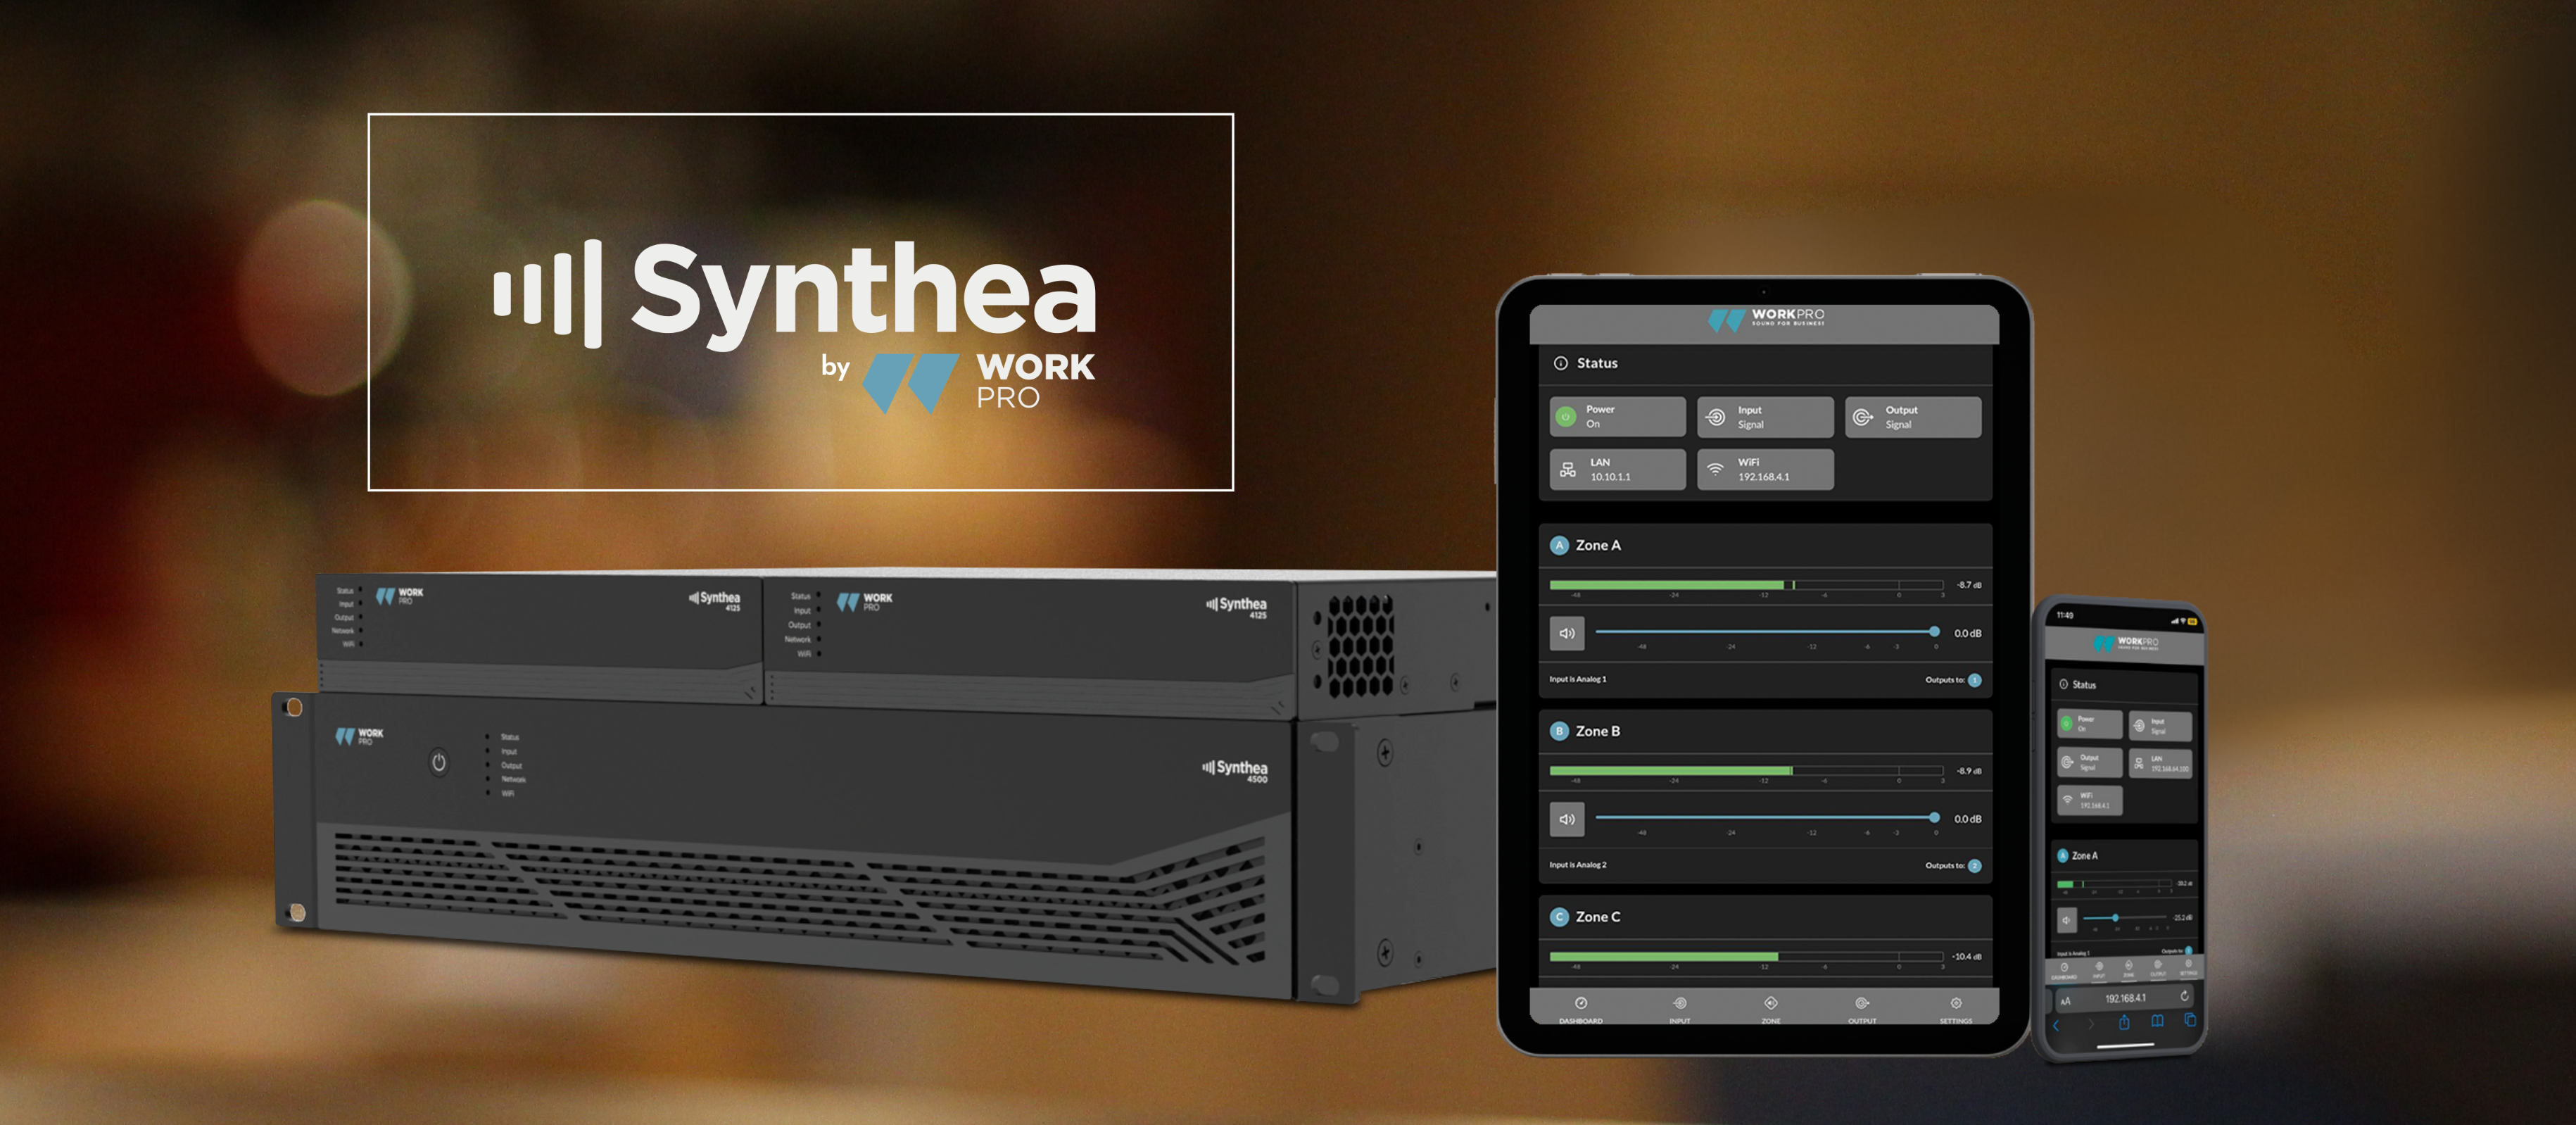 WORKPRO se enorgullece de presentar la serie SYNTHEA, la última incorporación a nuestra línea de productos de audio.